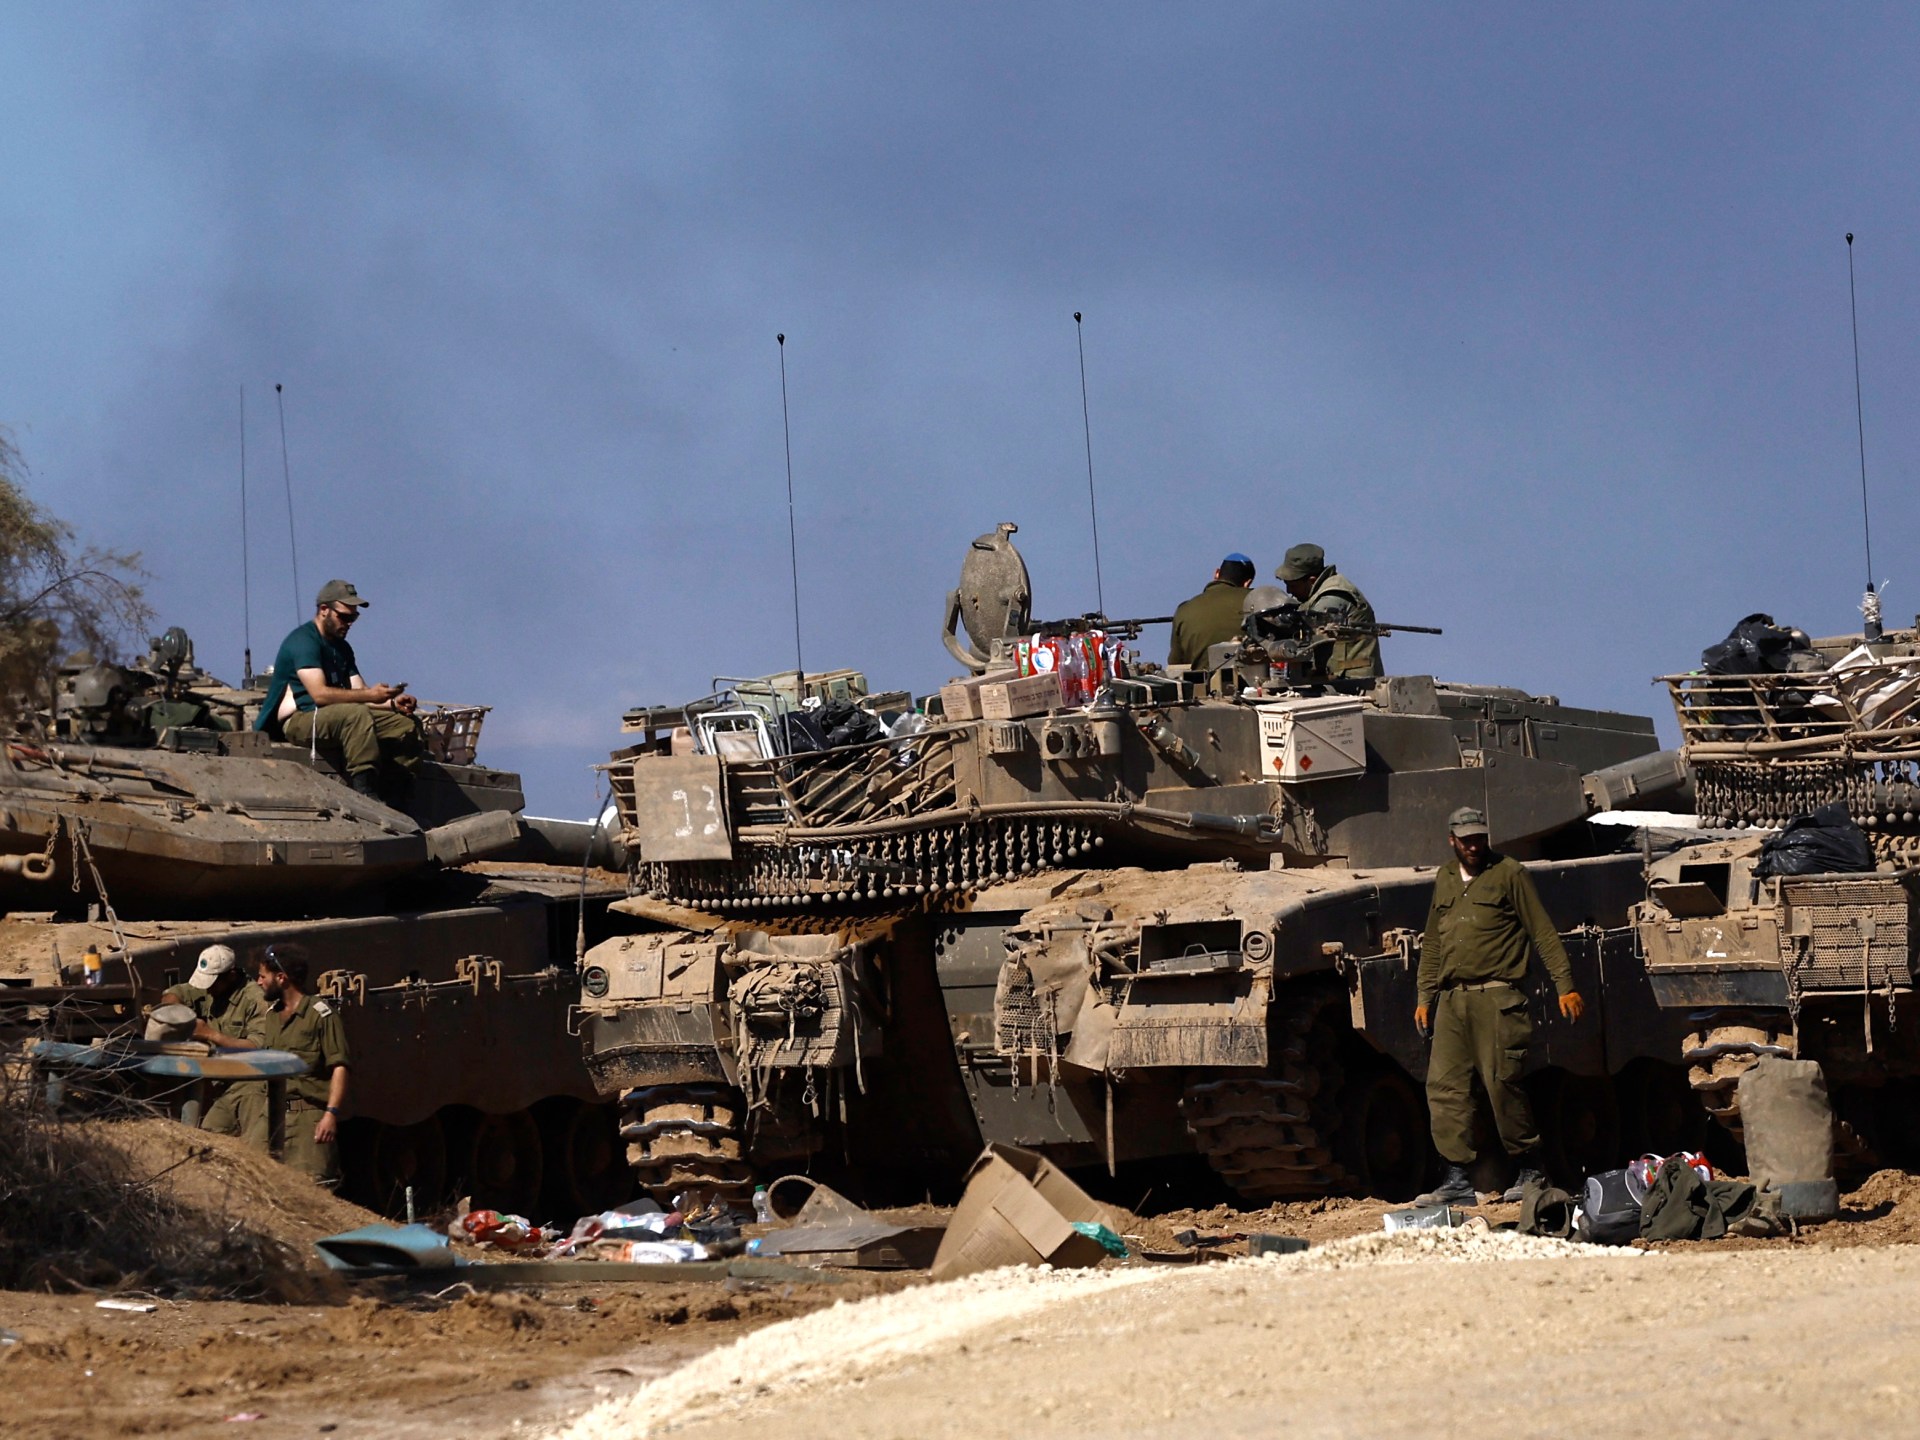 تحليل صور أقمار صناعية يظهر تباطؤ تقدم الآليات الإسرائيلية شمال غزة | أخبار – البوكس نيوز